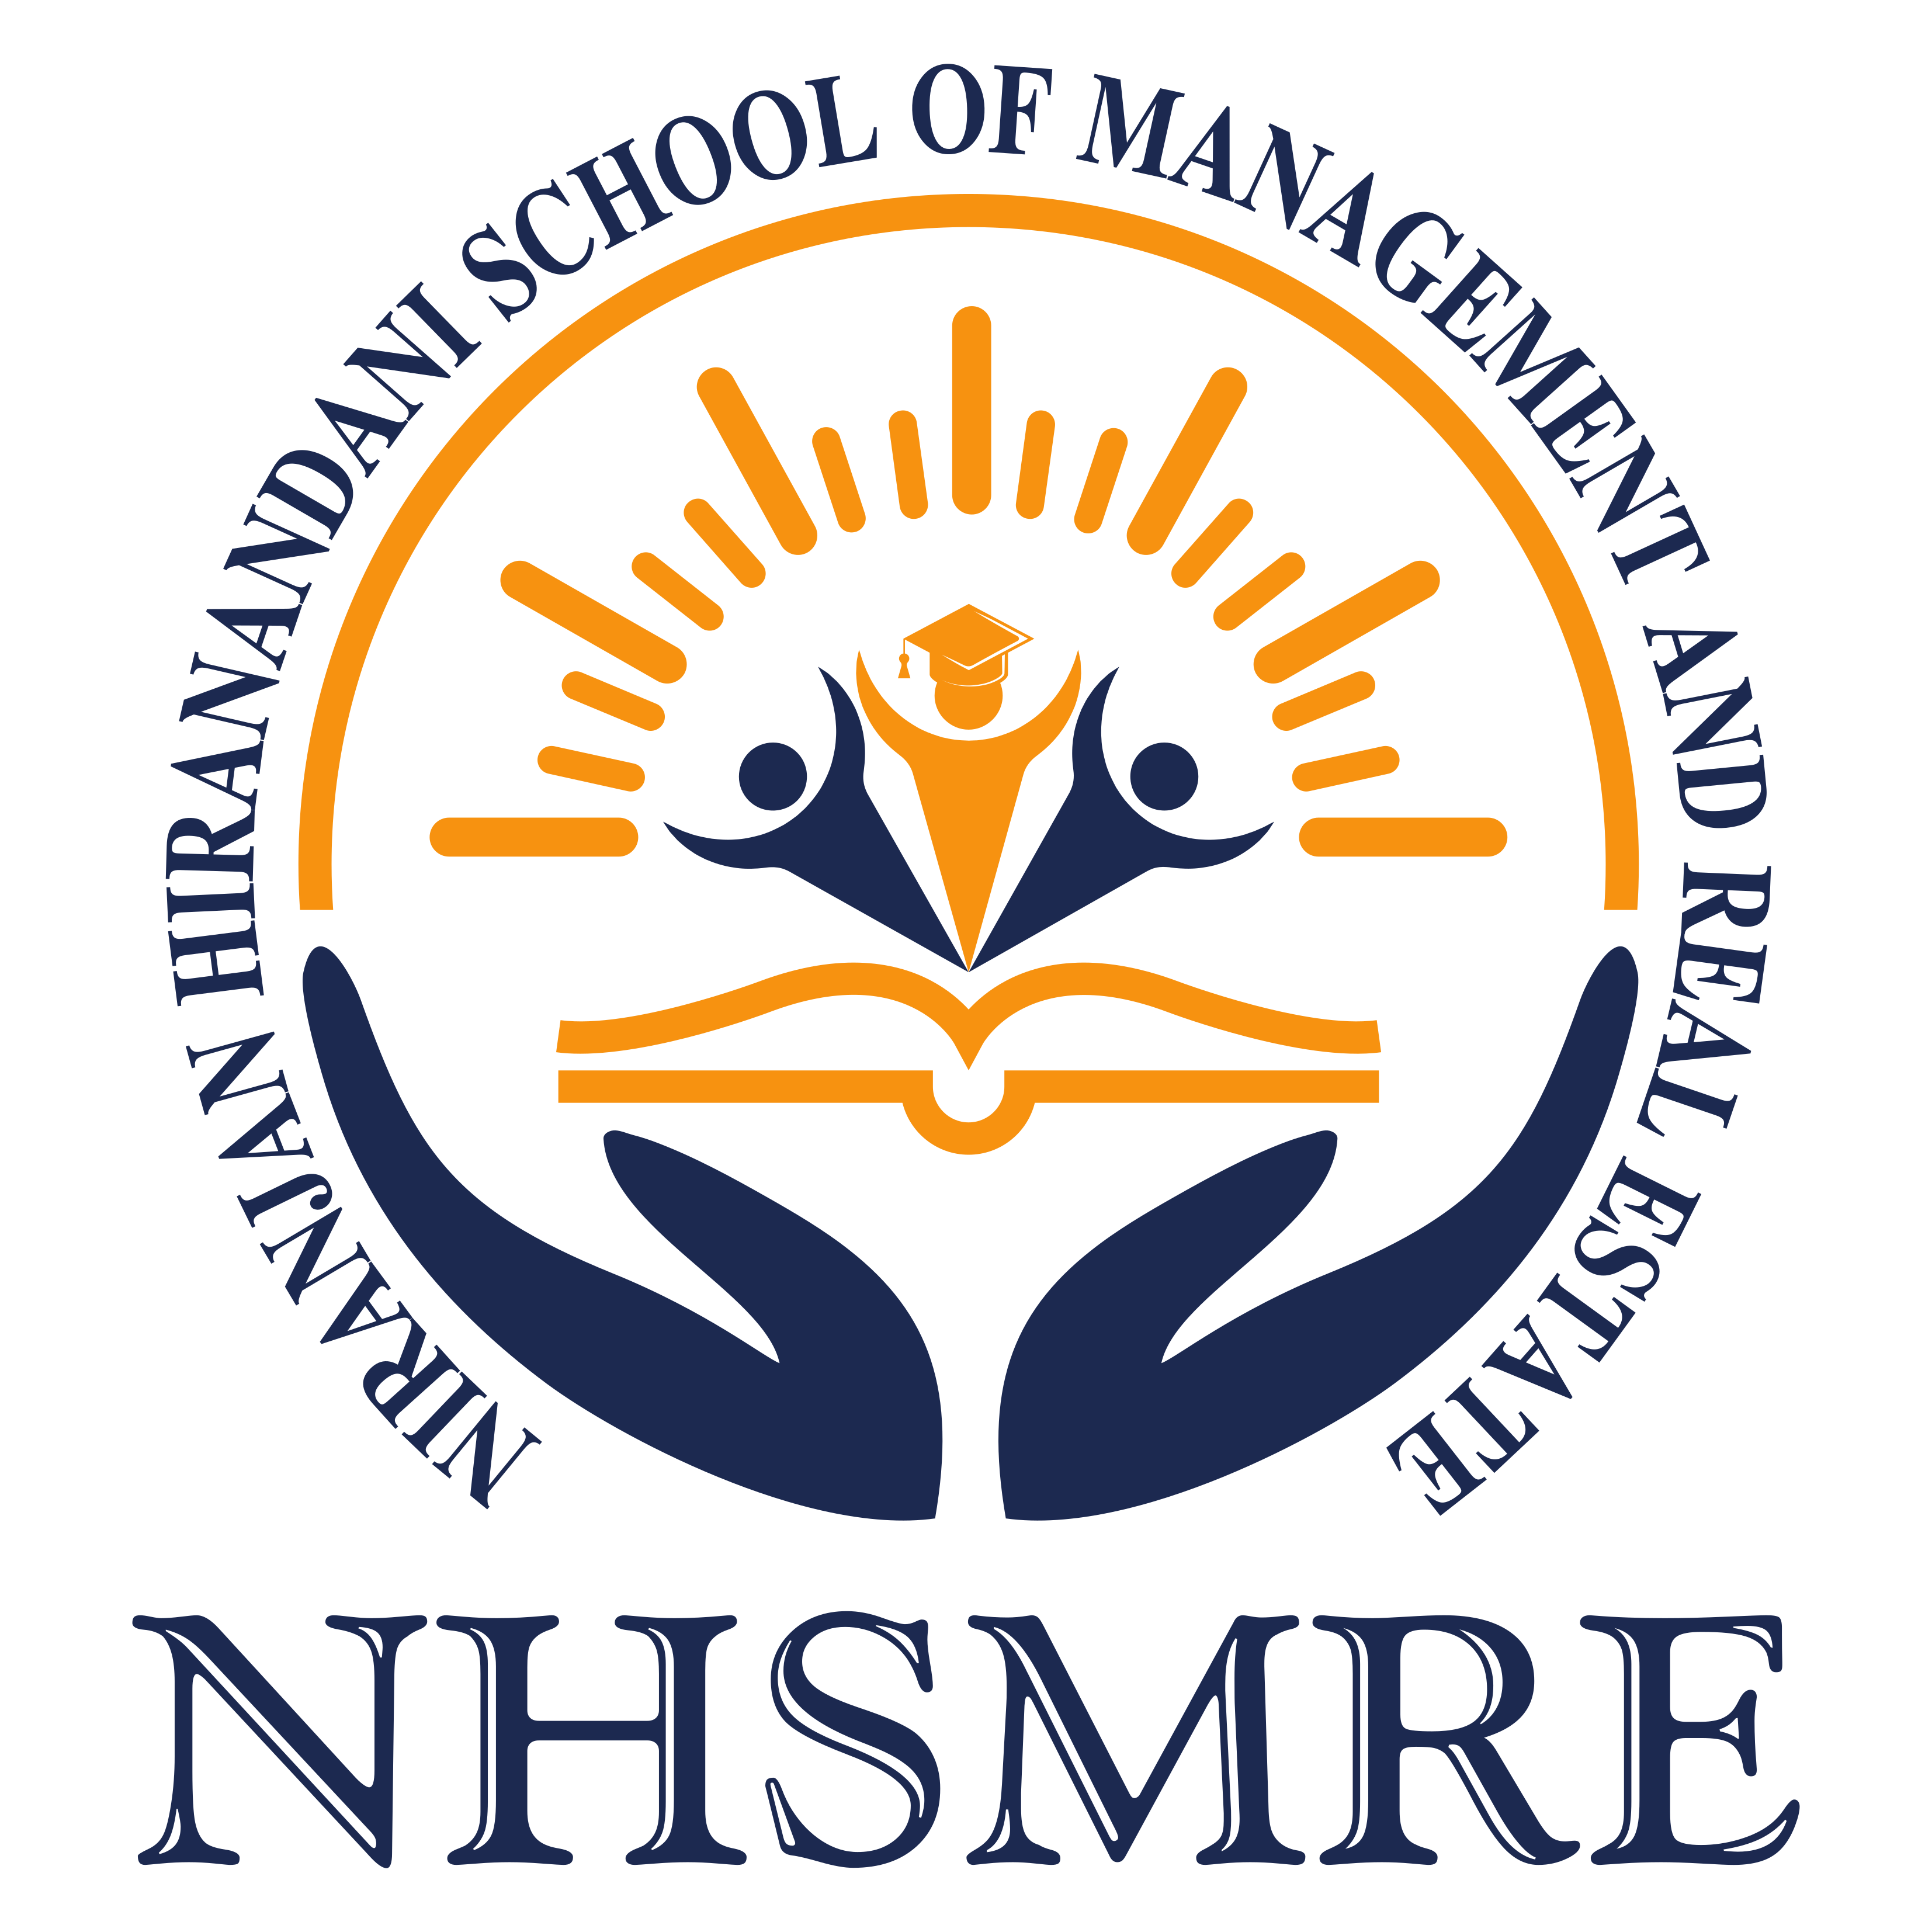 NIRANJAN HIRANANDANI SCHOOL OF REAL ESTATE (NHSRE)